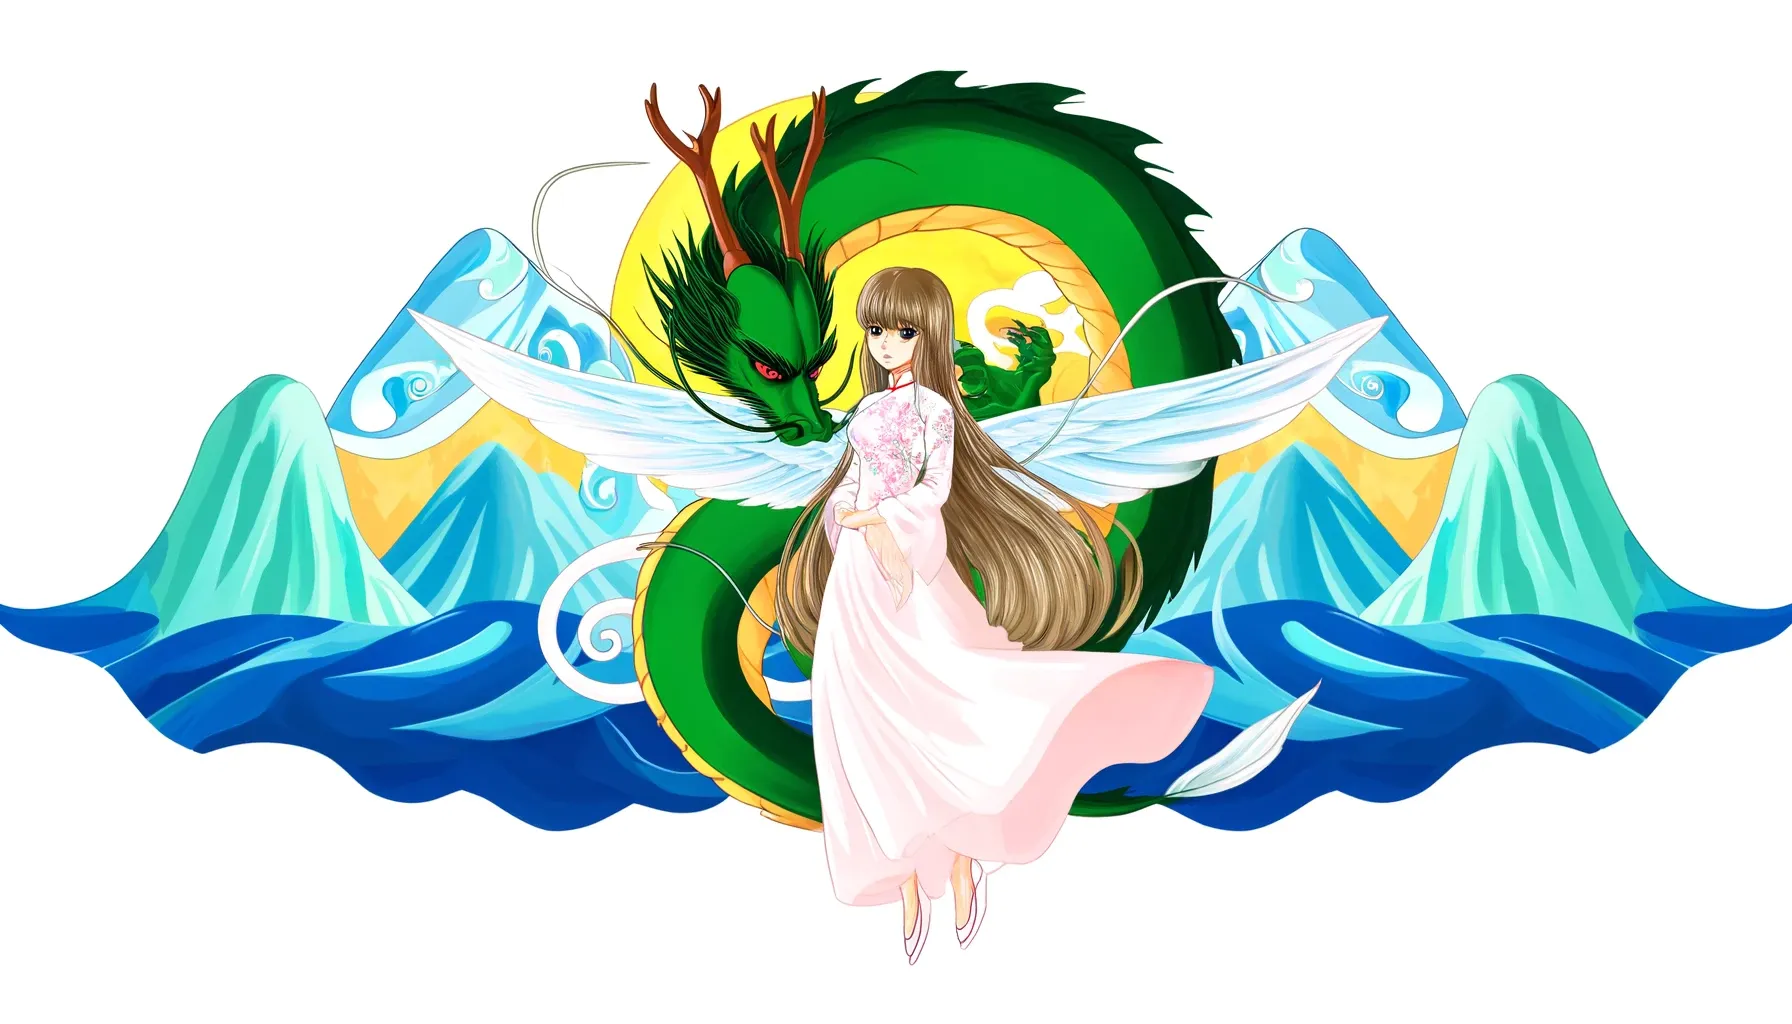 Ilustración estilo anime de Lạc Long Quân y Âu Cơ juntos, con Lạc Long Quân en forma de dragón protegiendo a Âu Cơ, que se muestra con alas delicadas y un entorno que mezcla olas oceánicas y picos montañosos.